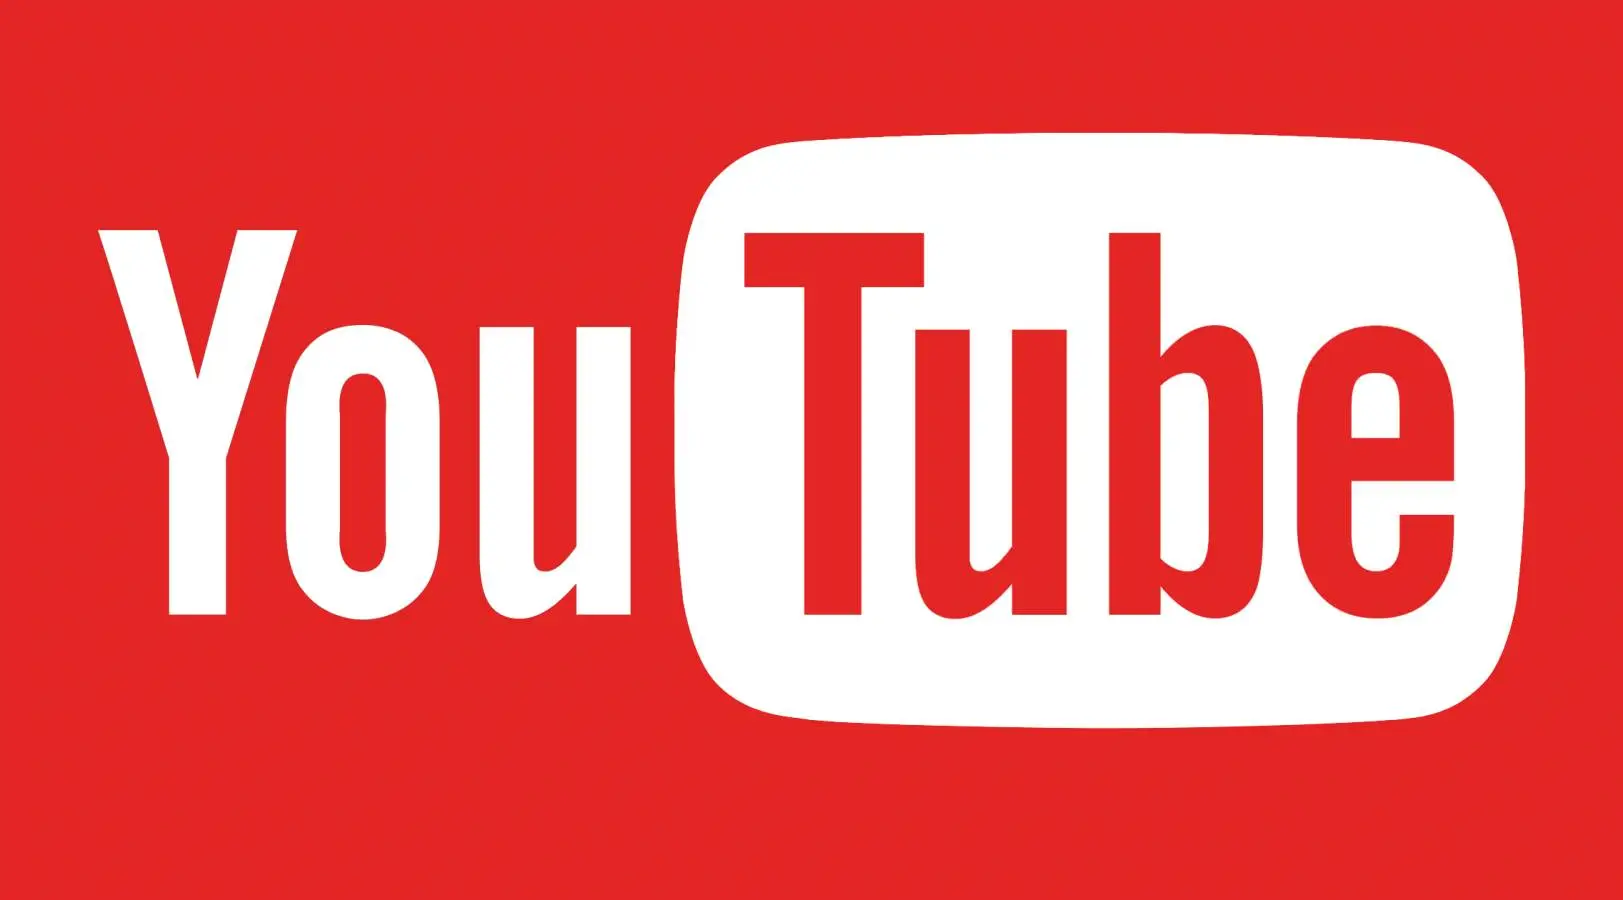 YouTube Update a fost Lansat cu Aceste Noutati in Telefoane si Tablete